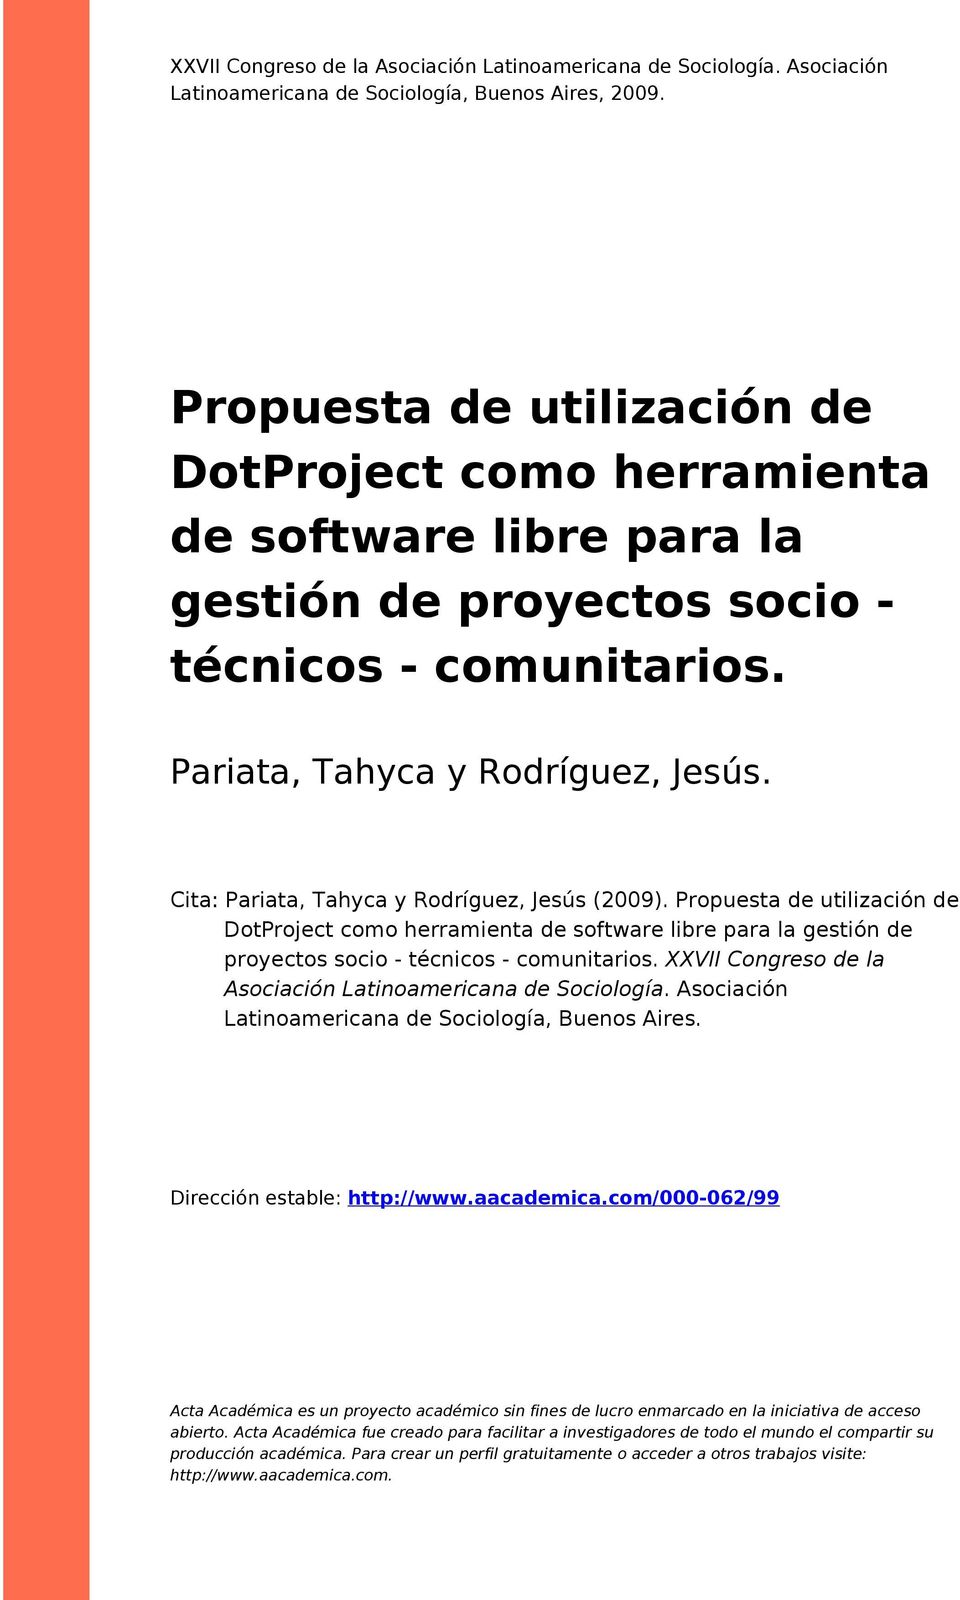 Cita: Pariata, Tahyca y Rdríguez, Jesús (2009). Prpuesta de utilización de DtPrject cm herramienta de sftware libre para la gestión de pryects sci - técnics - cmunitaris.